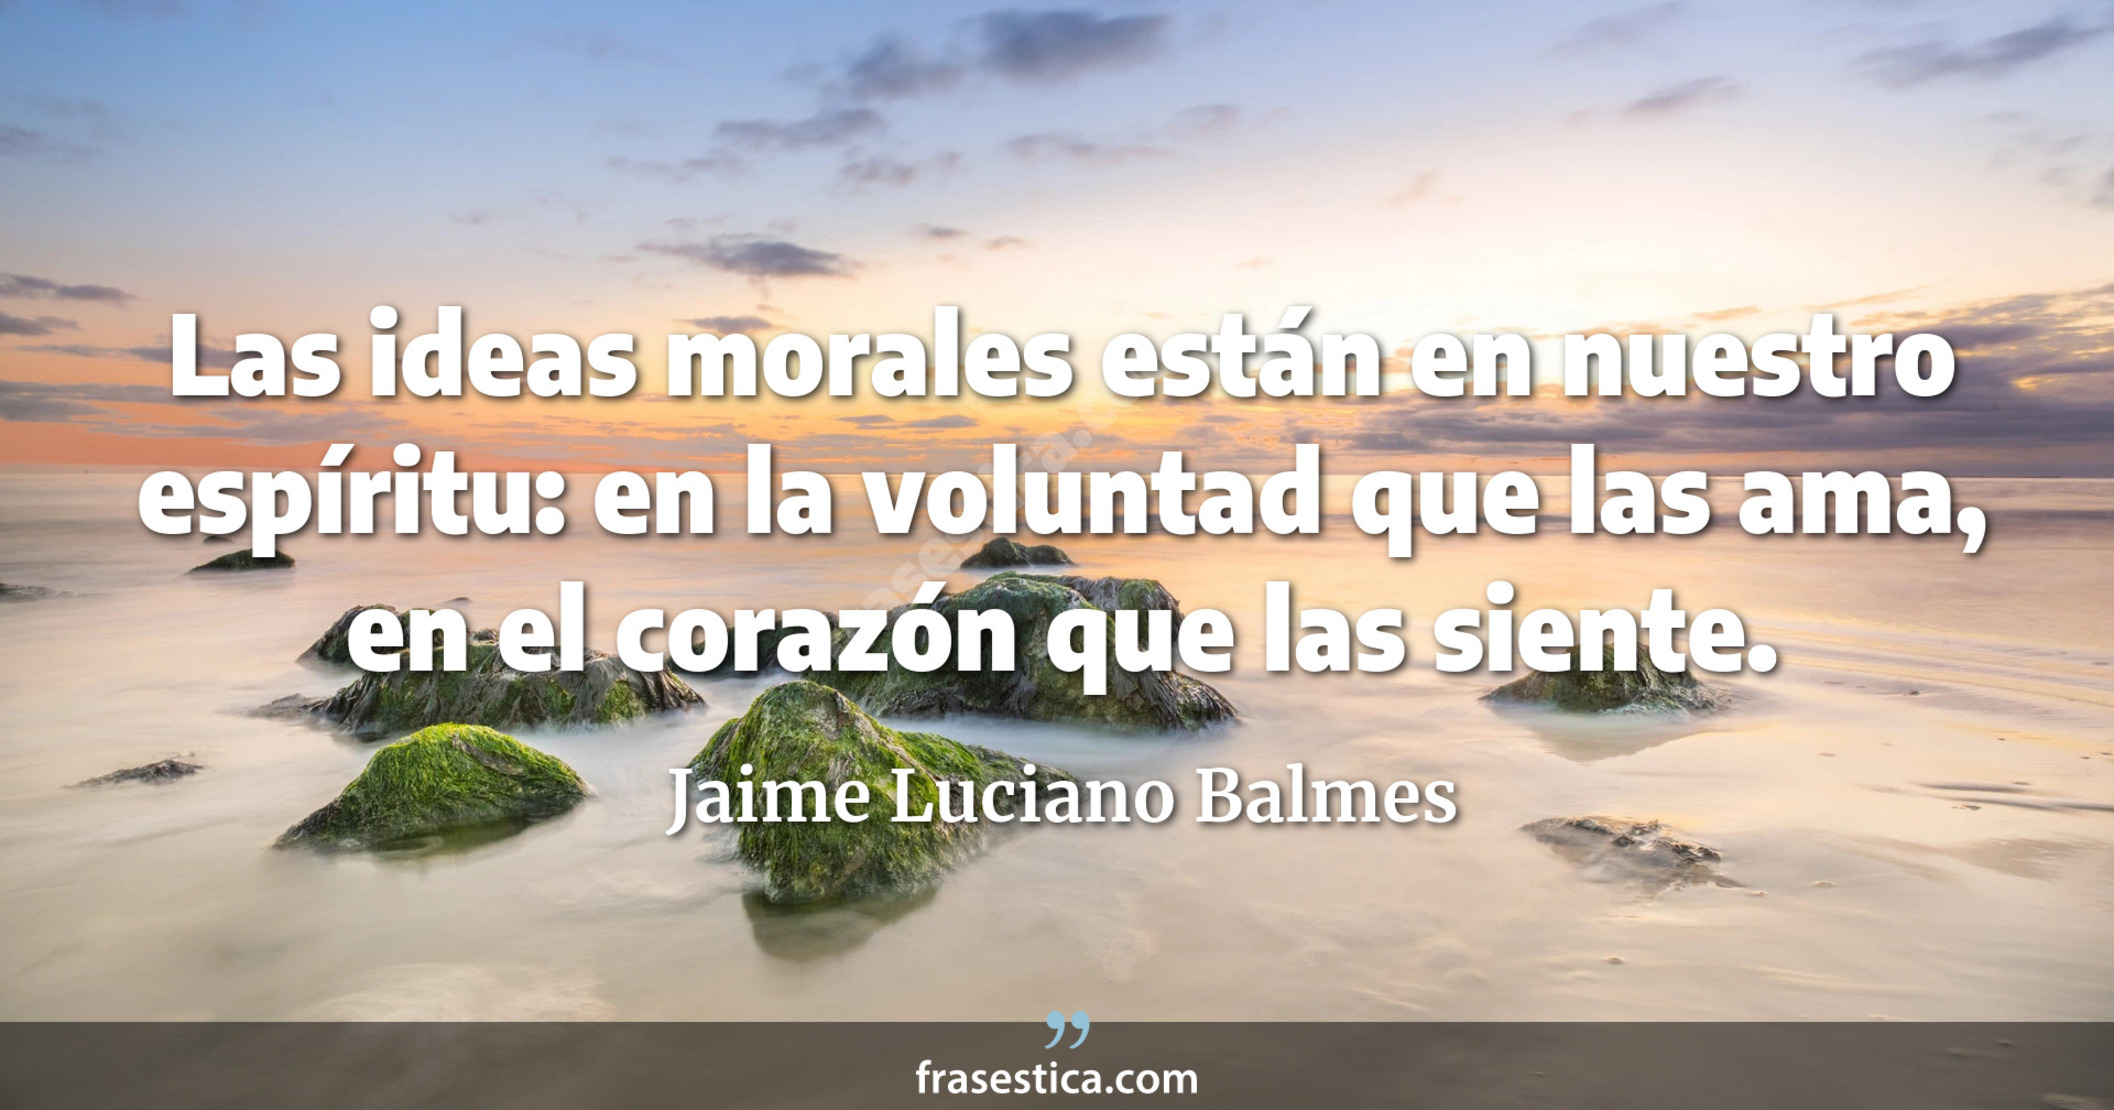 Las ideas morales están en nuestro espíritu: en la voluntad que las ama, en el corazón que las siente. - Jaime Luciano Balmes